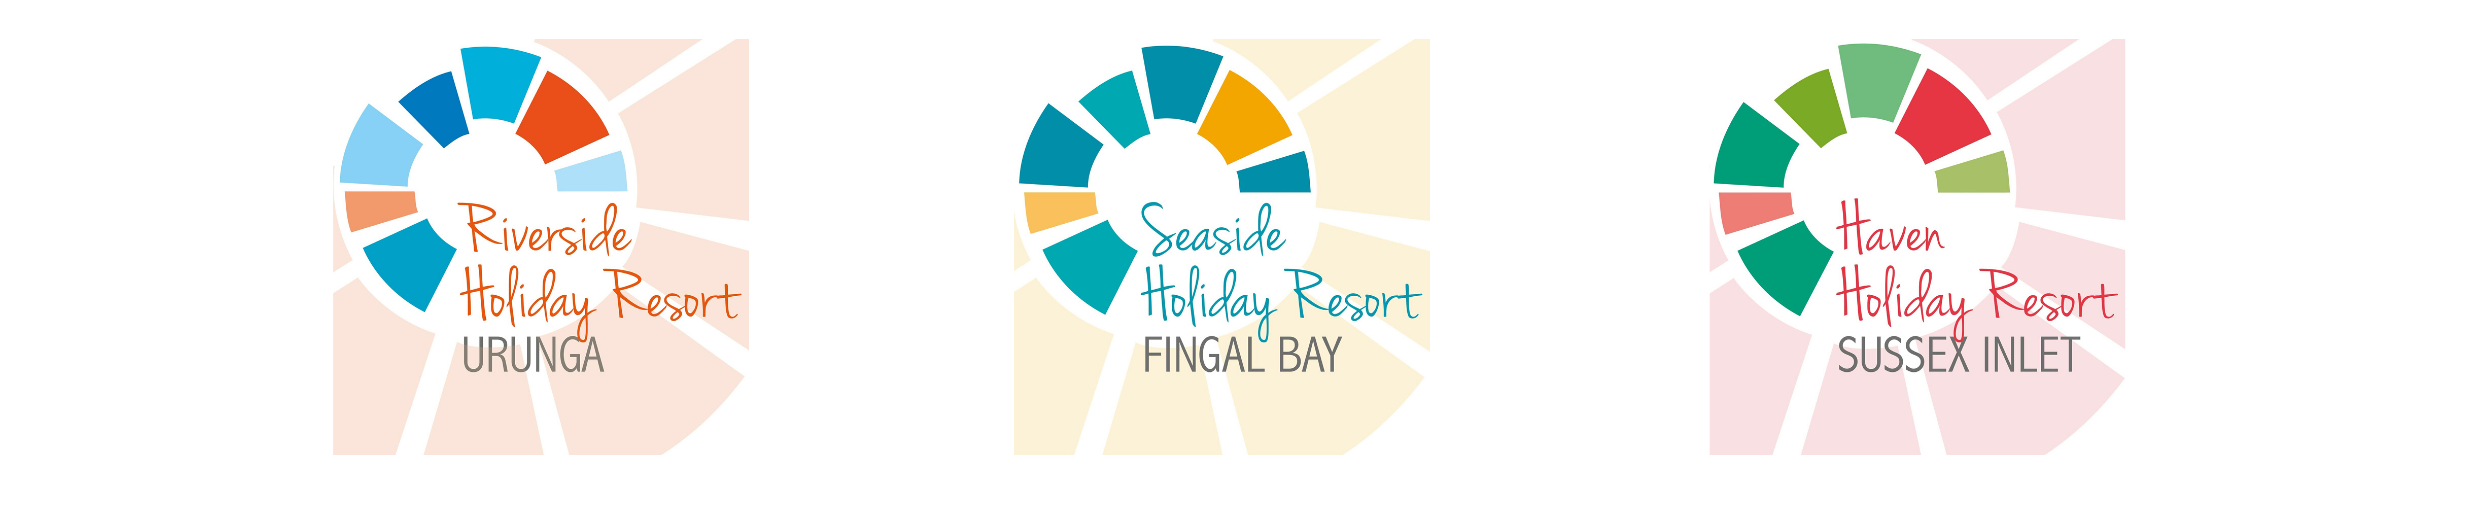 Riverside Holiday Resort Urunga, Seaside Holiday Resort Fingal Bay, Haven Holiday Resort Sussex Inlet